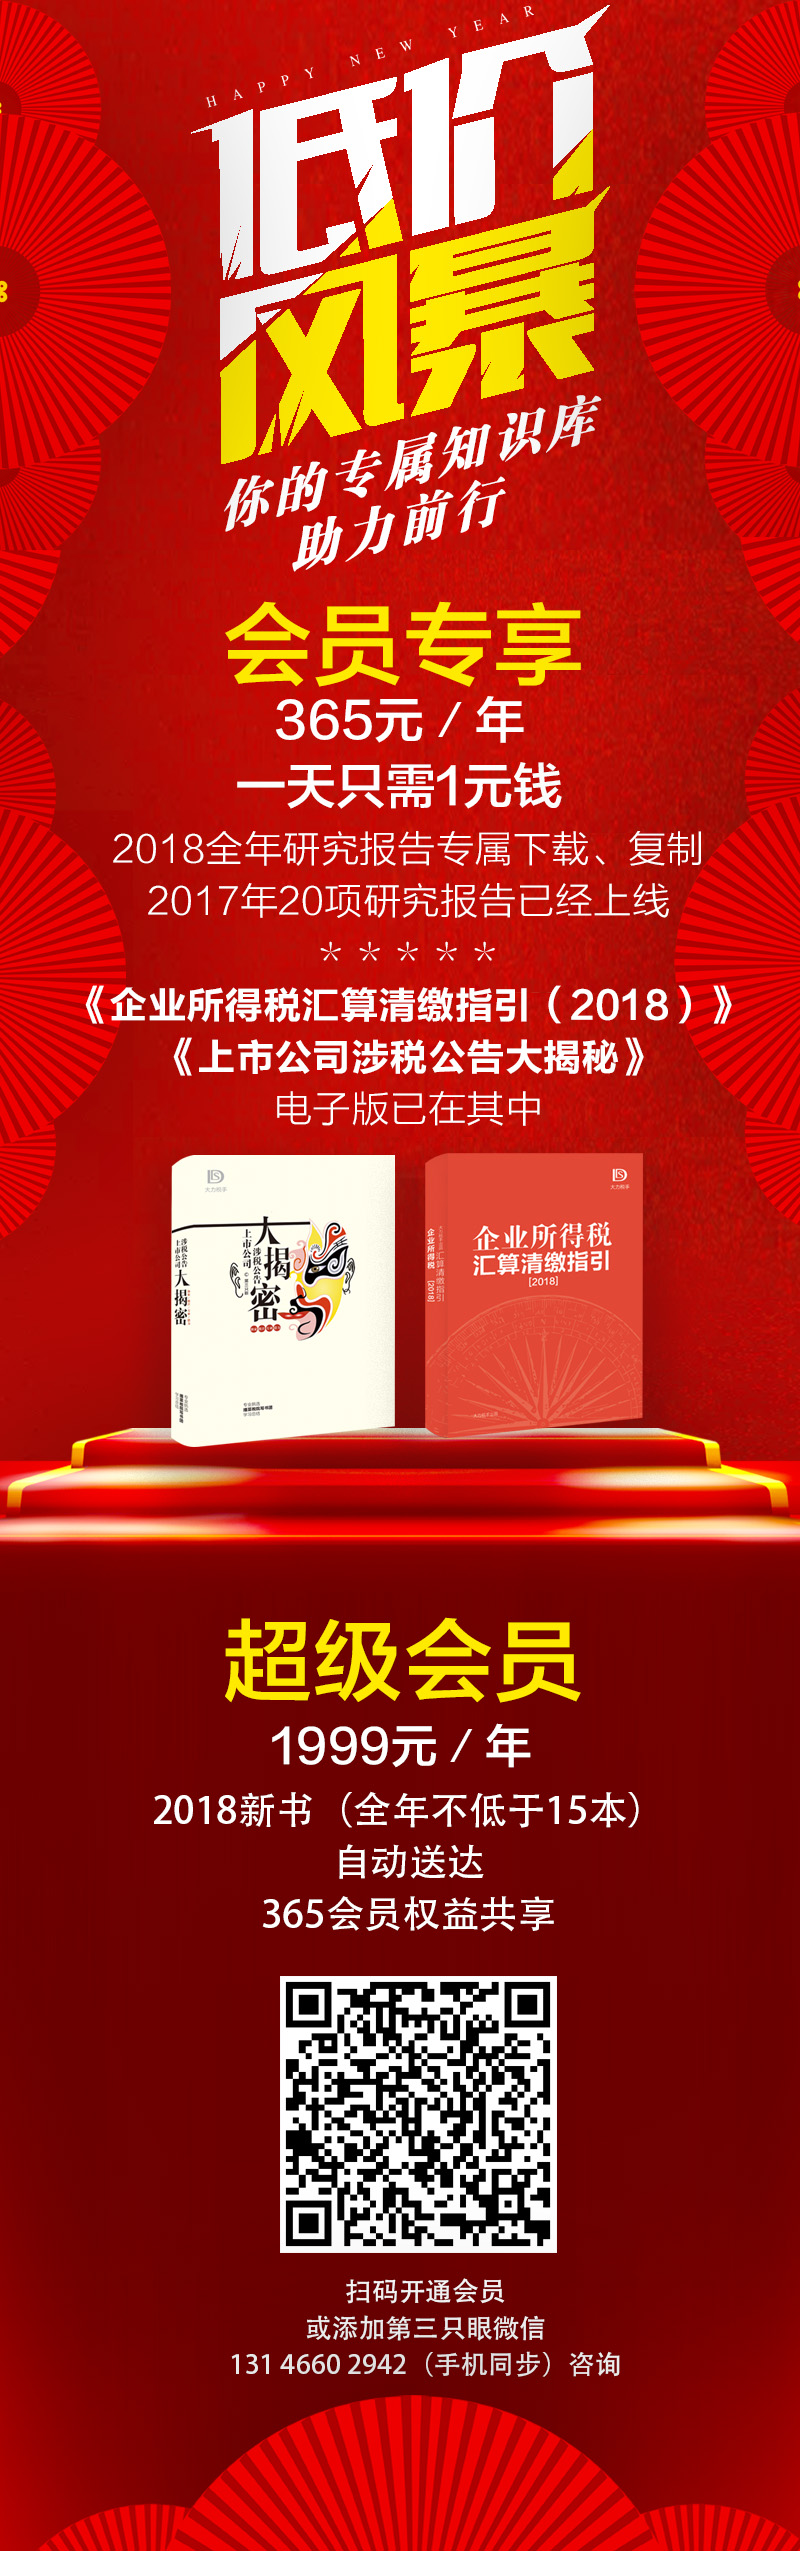 WeChat Image_20180210142805.jpg